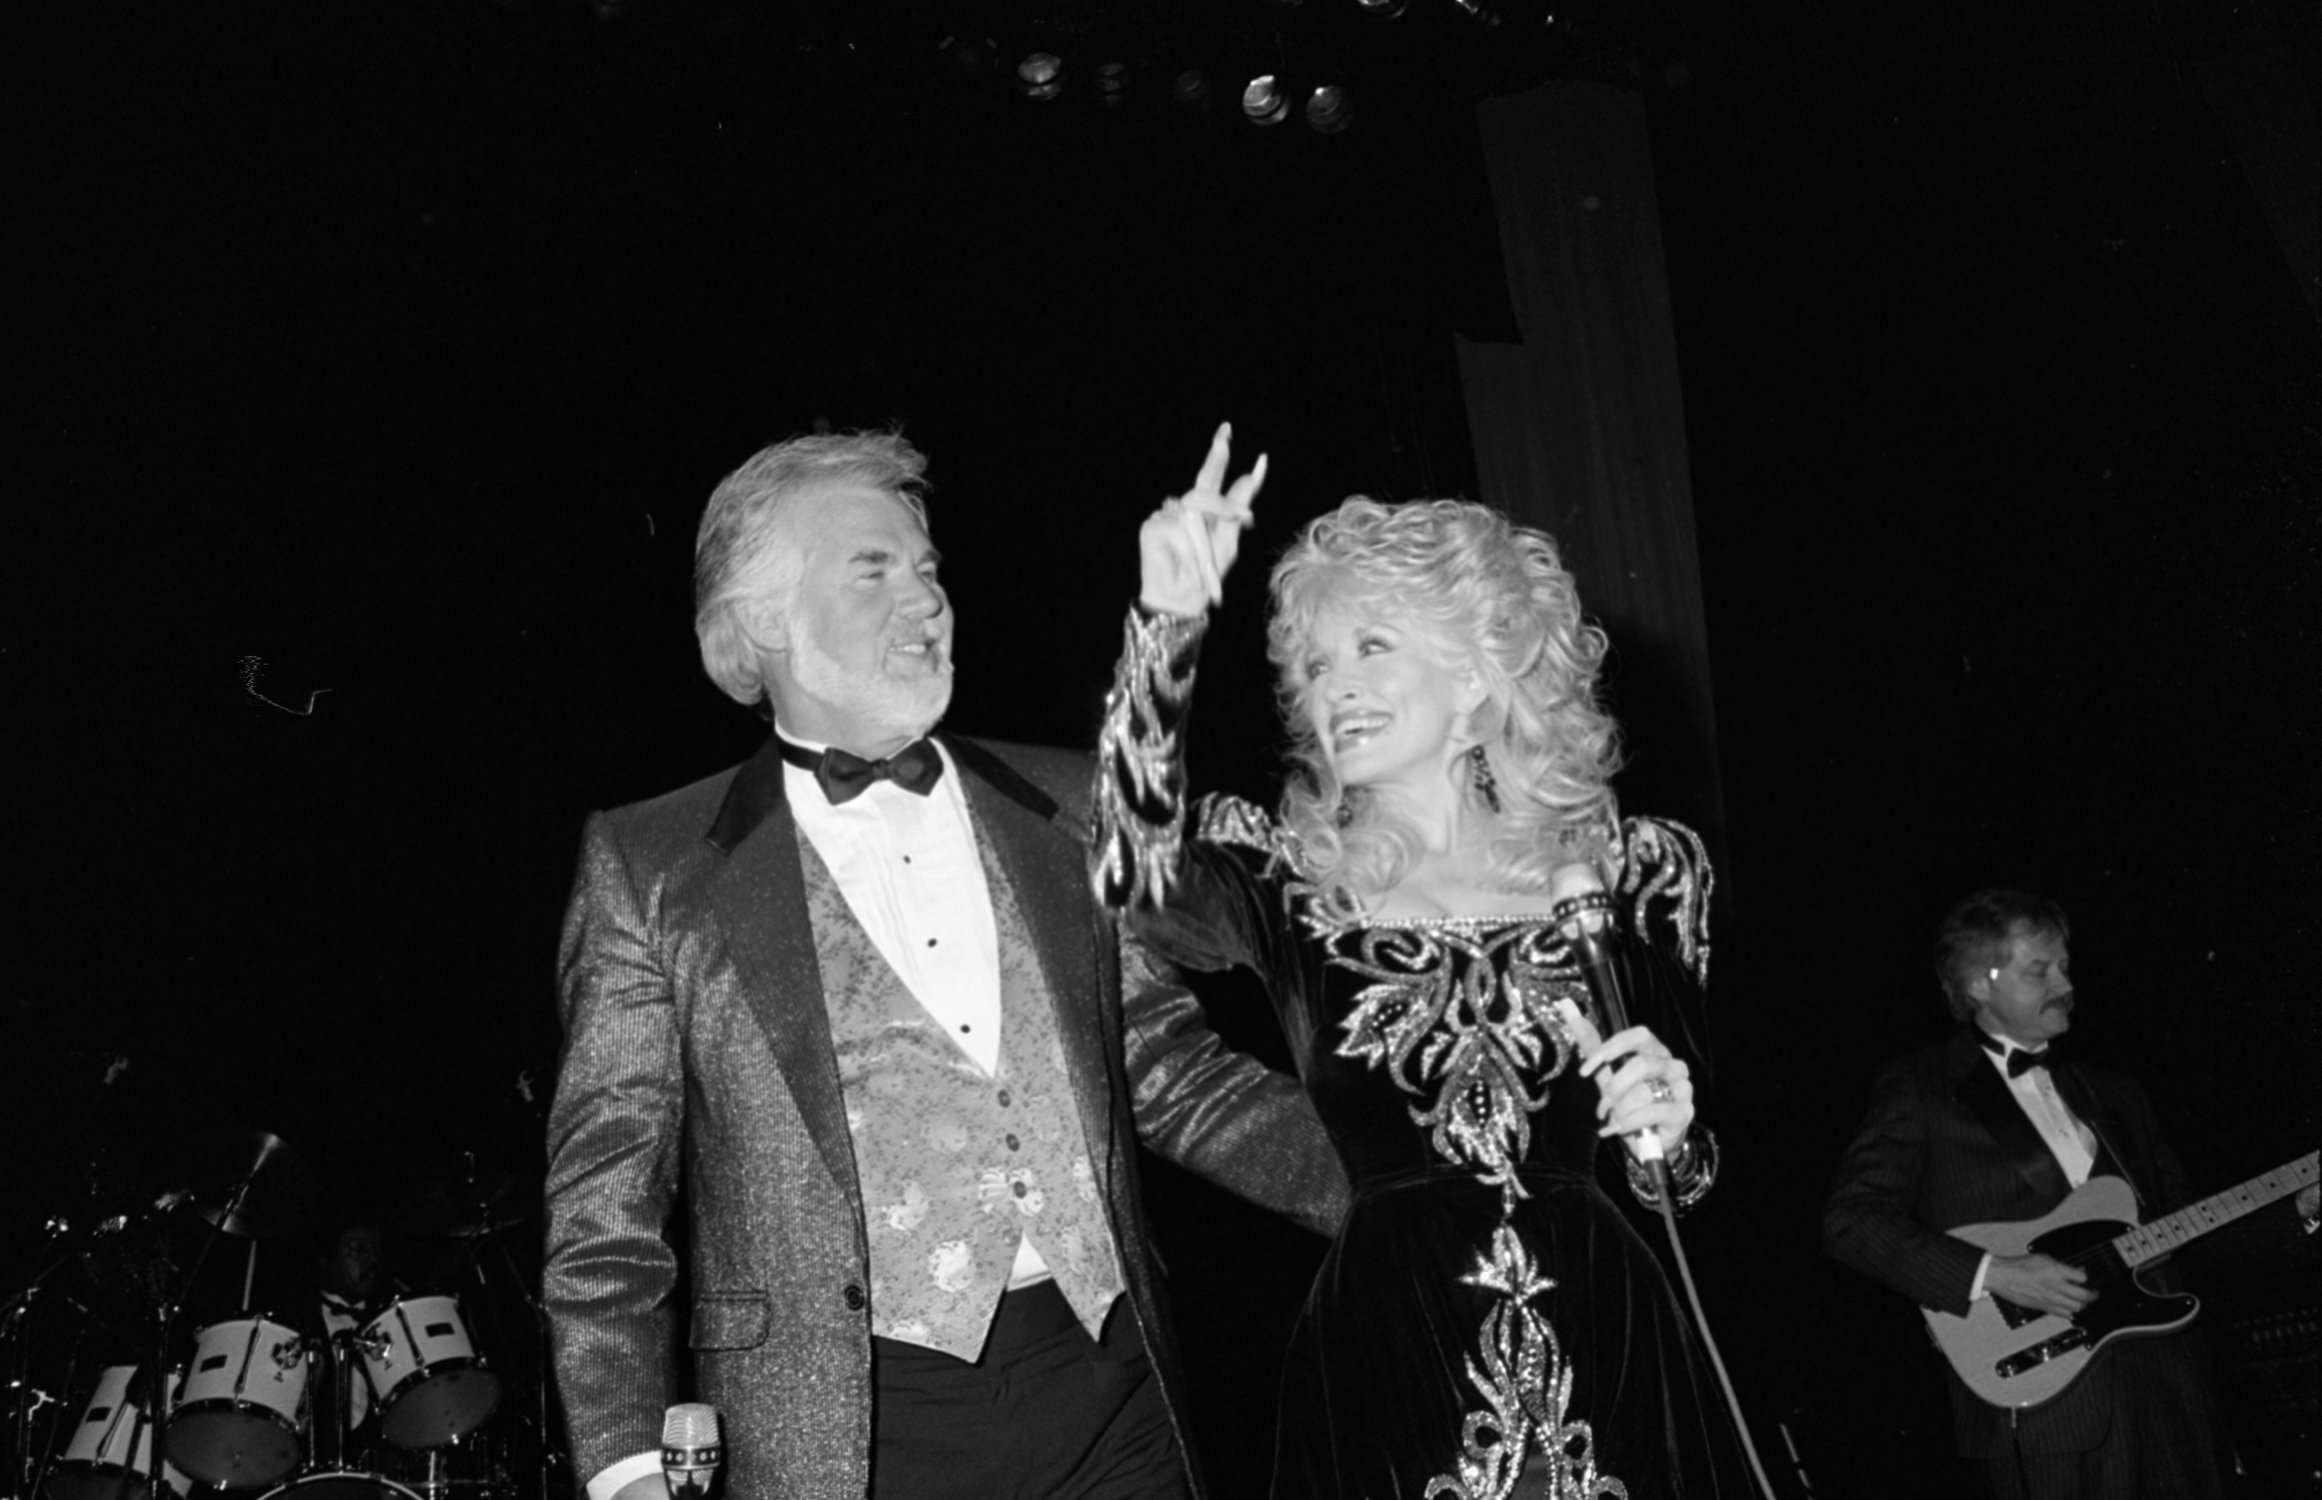  ESTADOS UNIDOS - 1 DE ABRIL: Dolly Parton y Kenny Rogers. I Foto: Getty Images